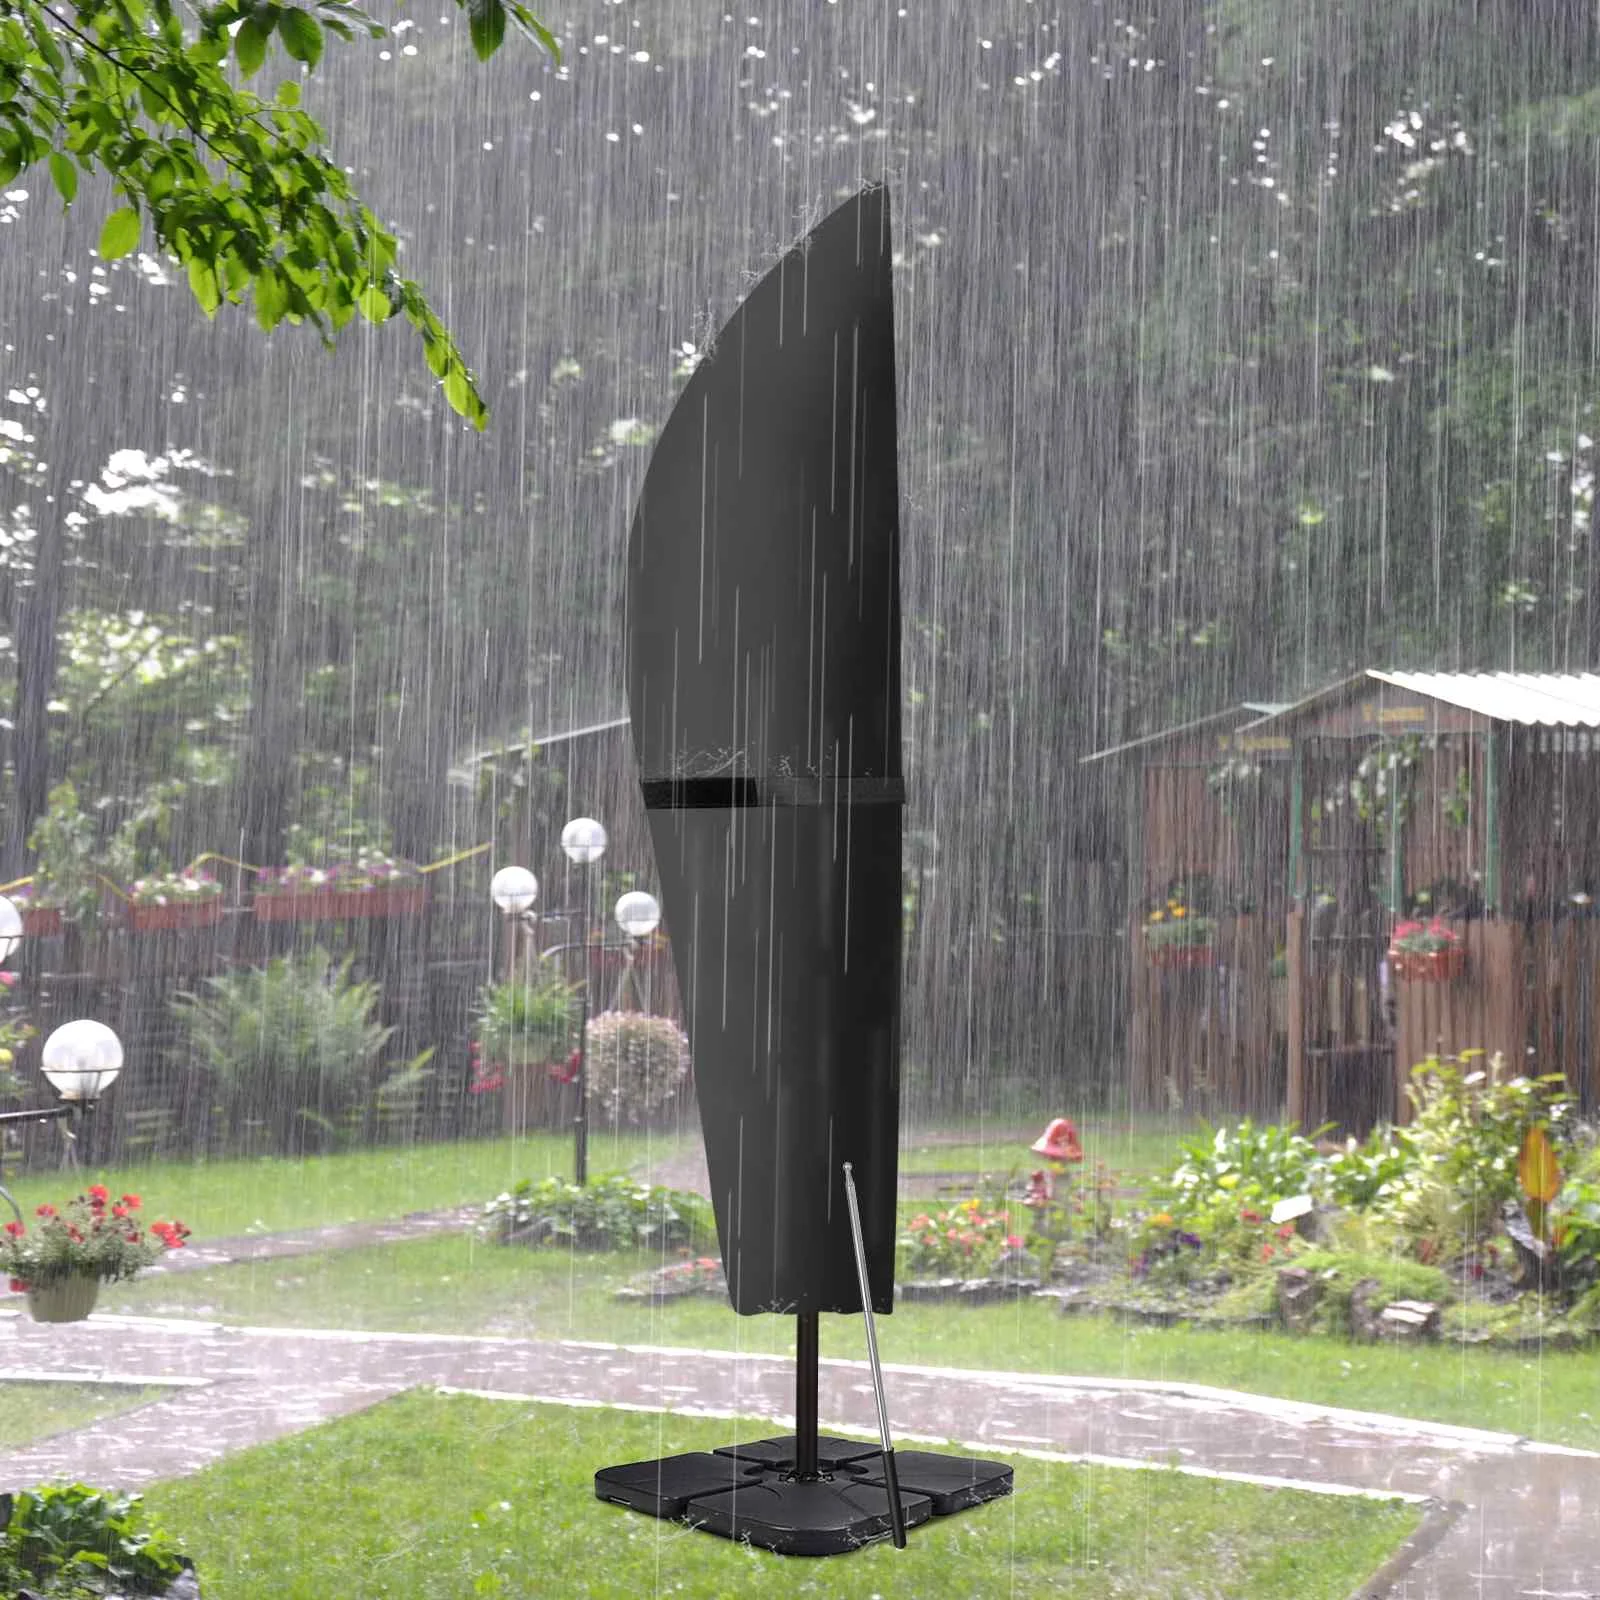 

Водонепроницаемый уличный зонт для сада из ткани Оксфорд, защитный чехол для зонта, погодостойкий консольный зонт для патио, Дождевой чехол